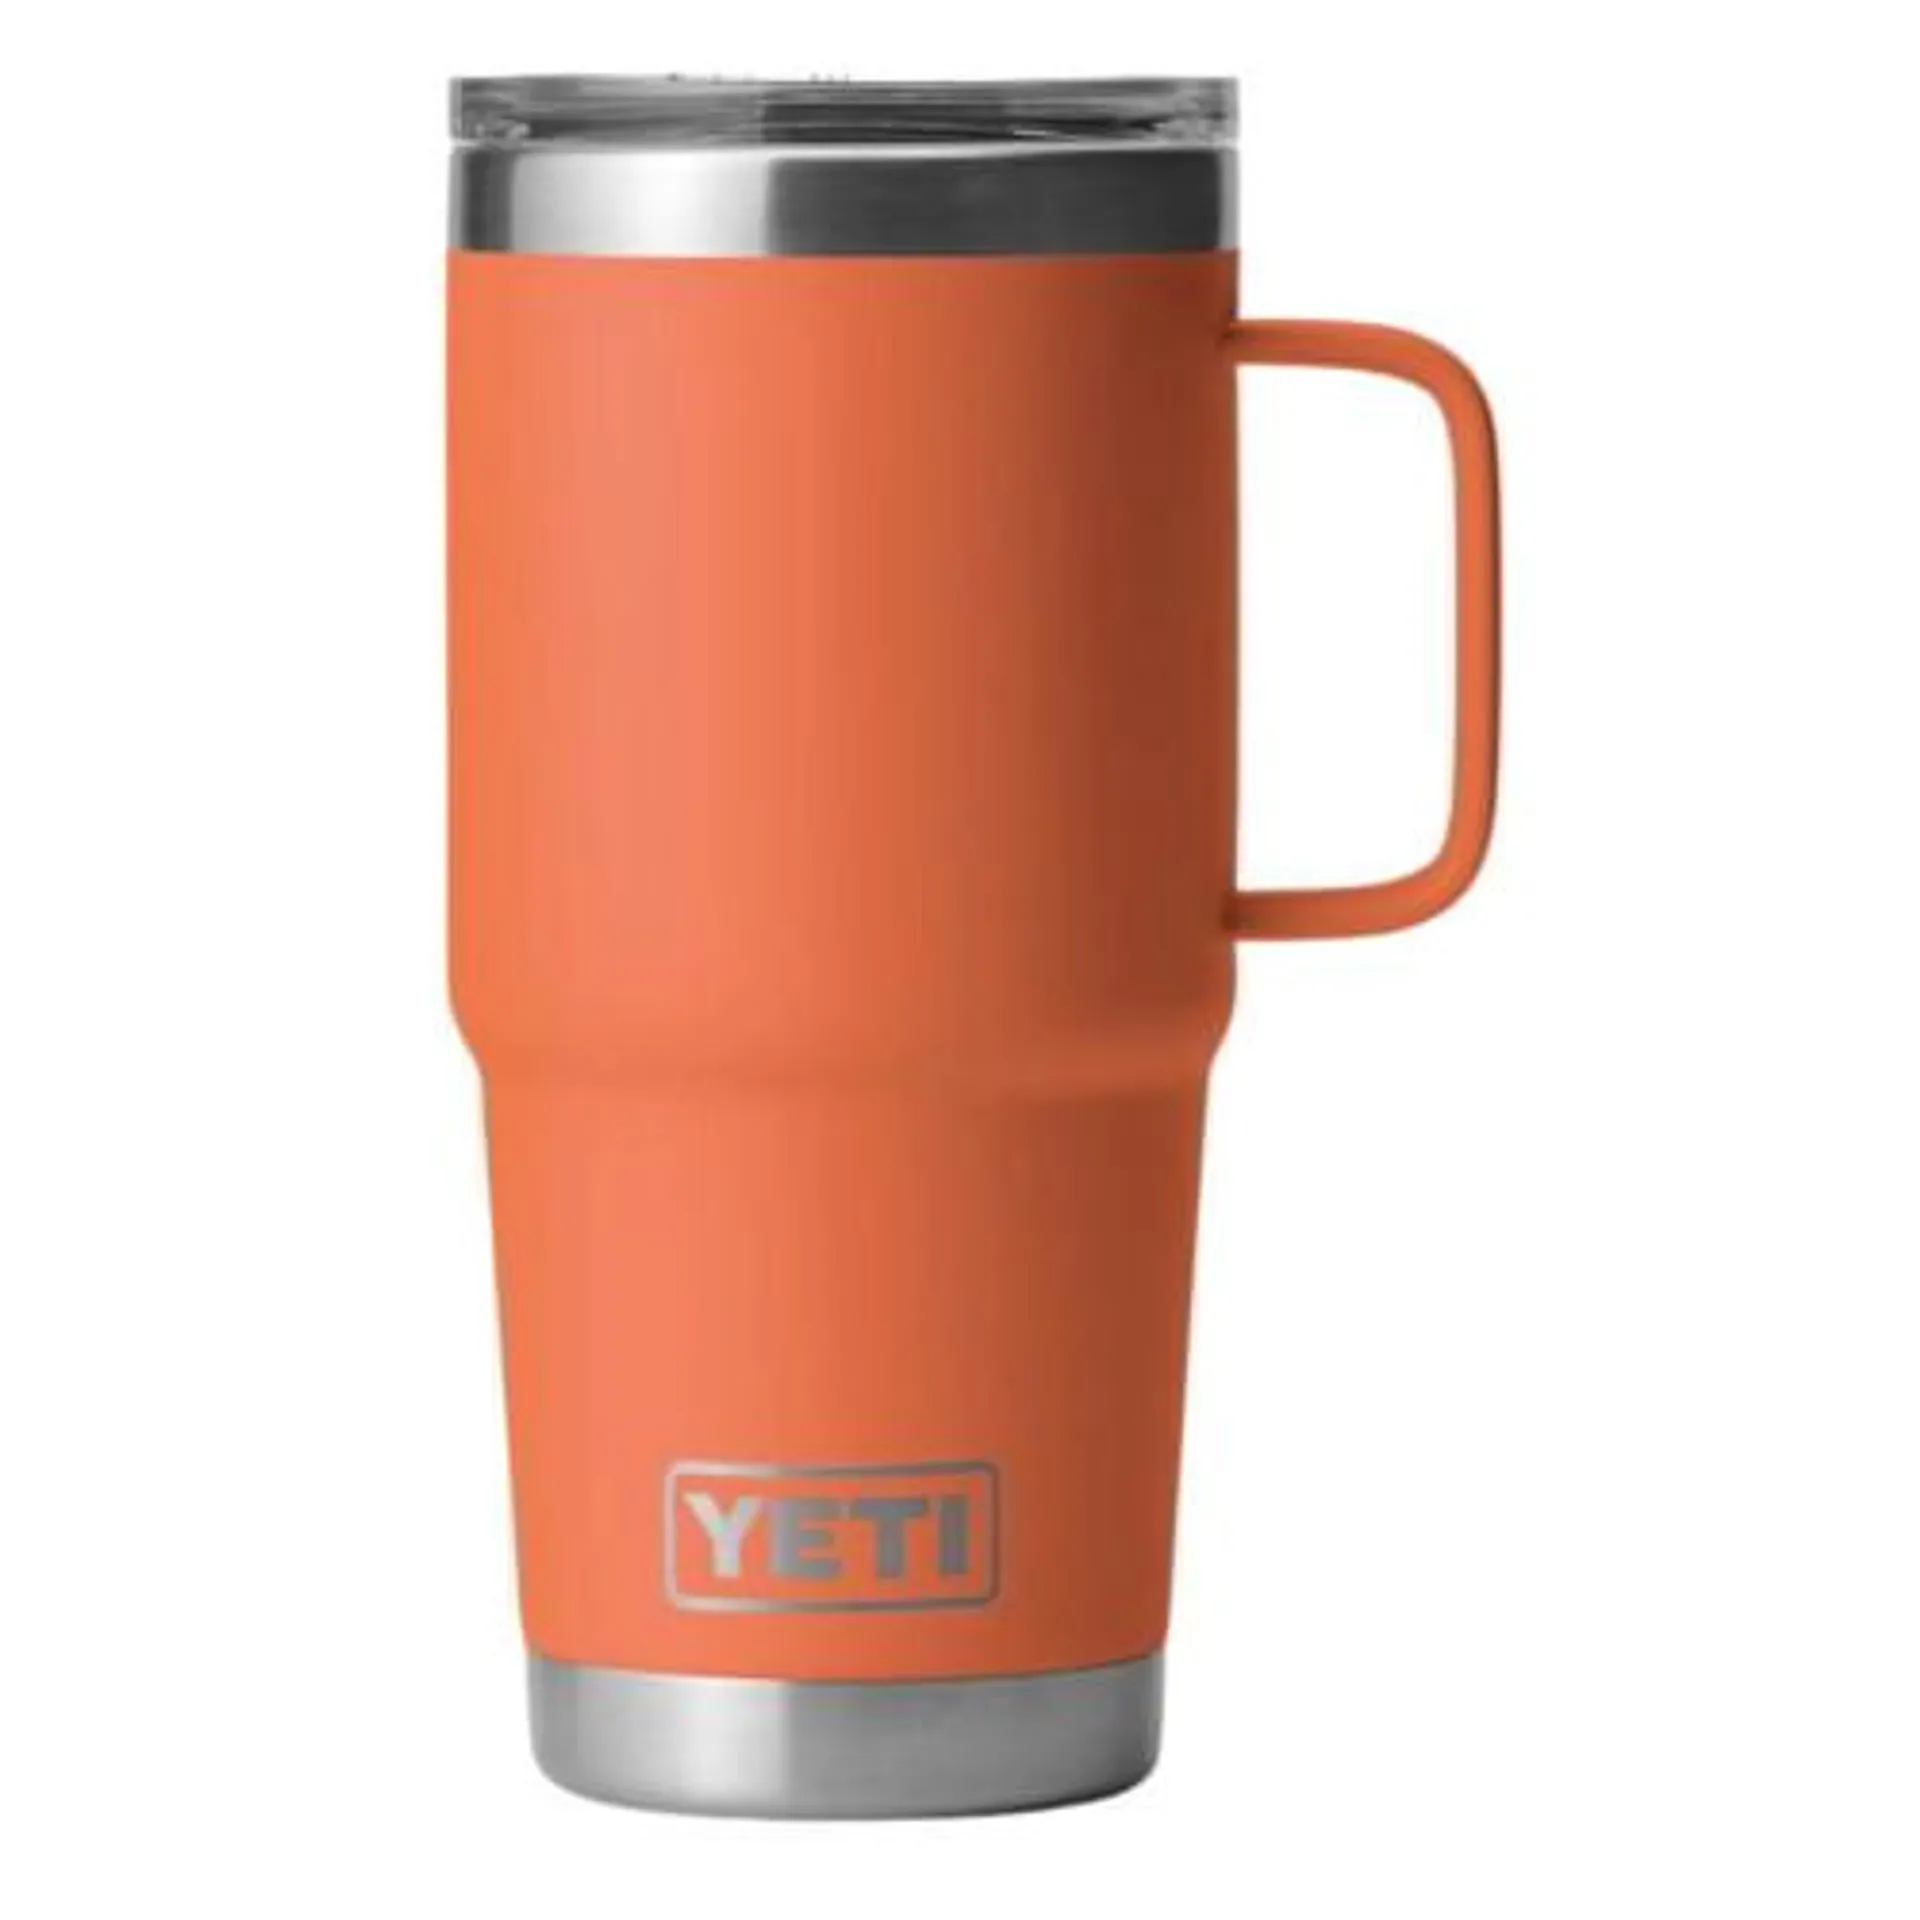 Yeti Rambler 20 oz Travel Mug